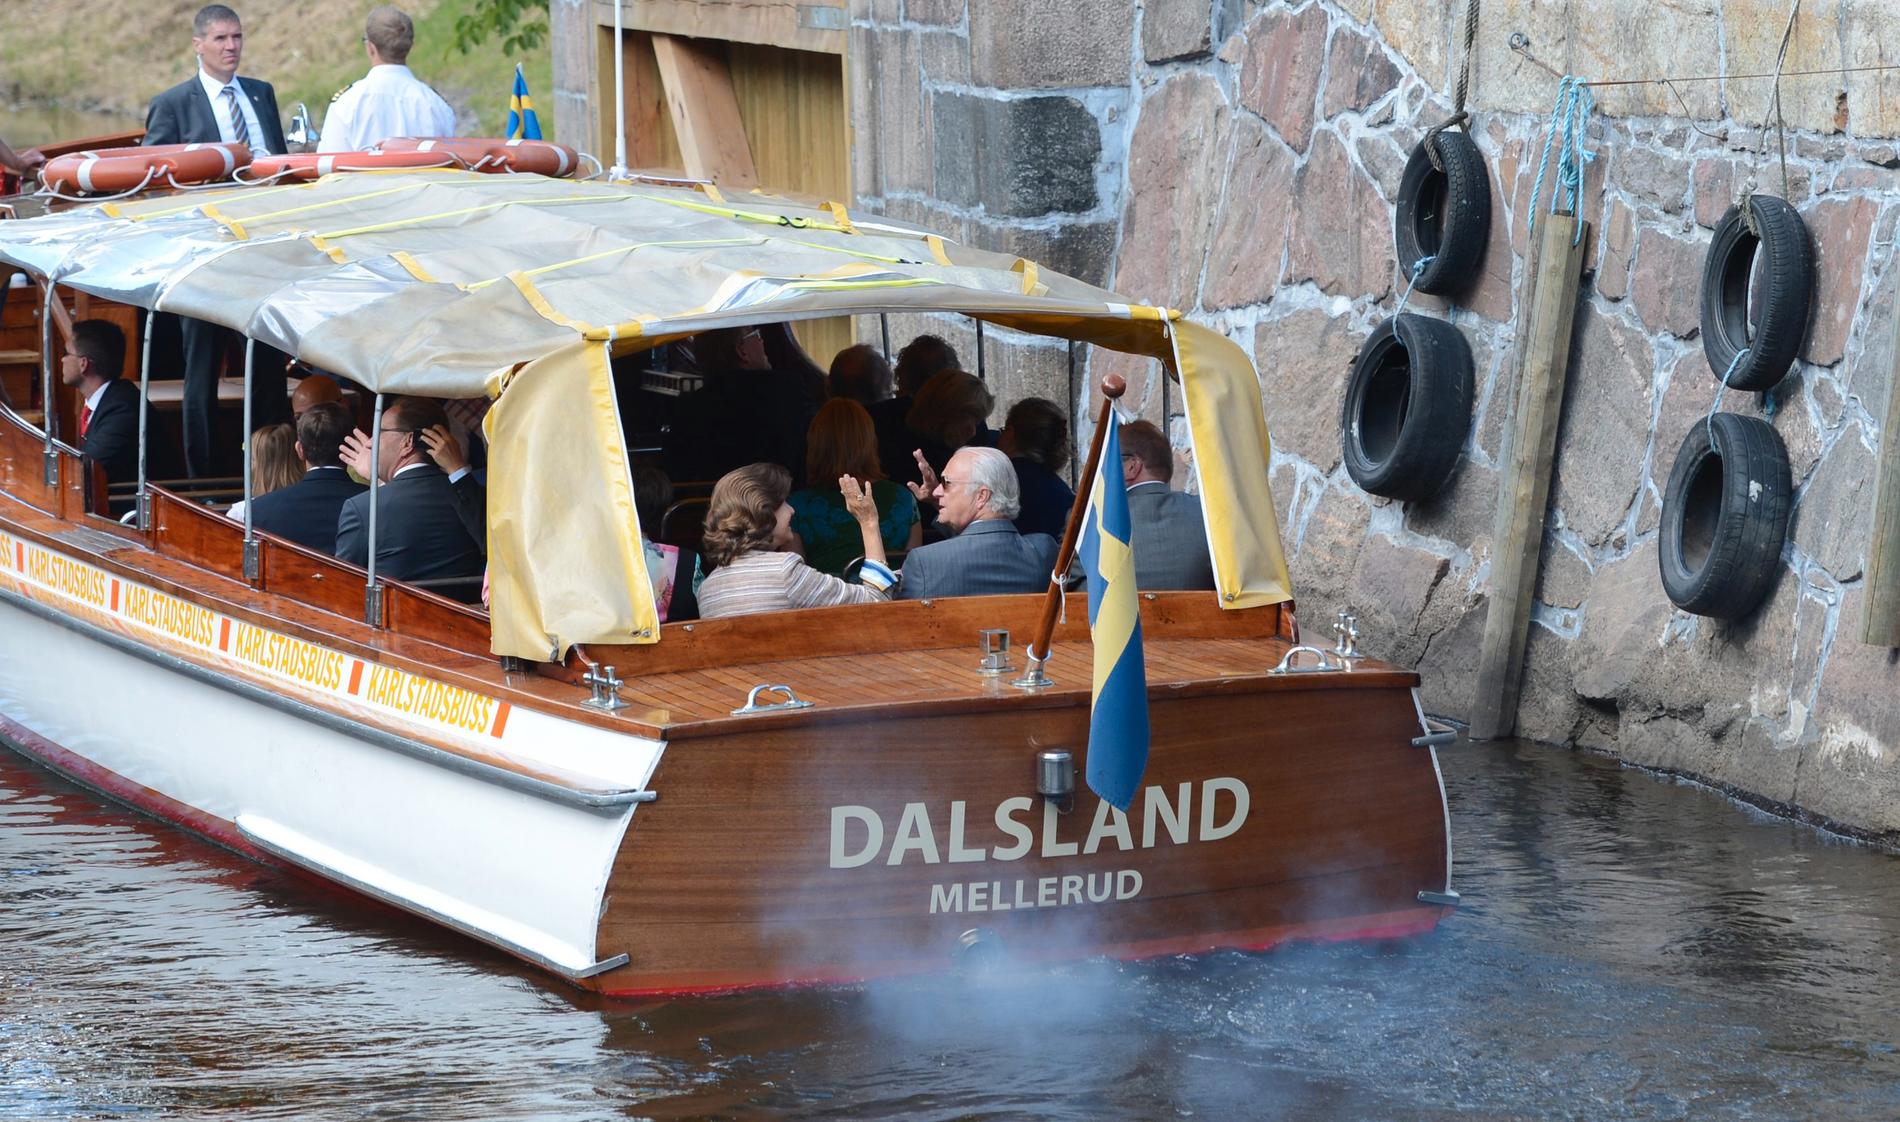 Så här såg det ut när kungen och drottningen provåkte båtbussen Dalsland i augusti 2013 i samband med kungens jubileumsår.